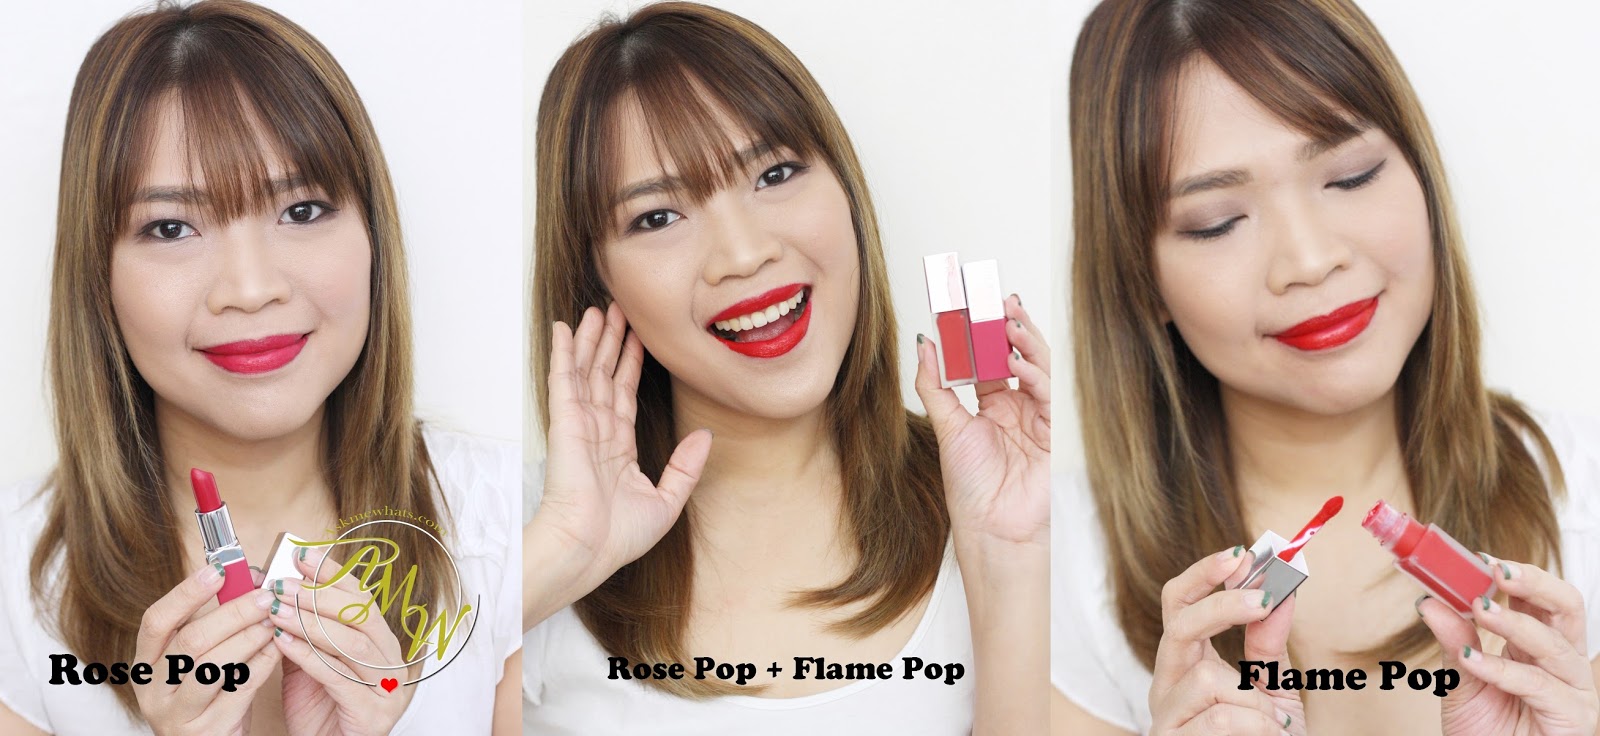 eetlust Op het randje in tegenstelling tot AskMeWhats - Top Beauty Blogger Philippines - Skincare Makeup Review Blog  Philippines